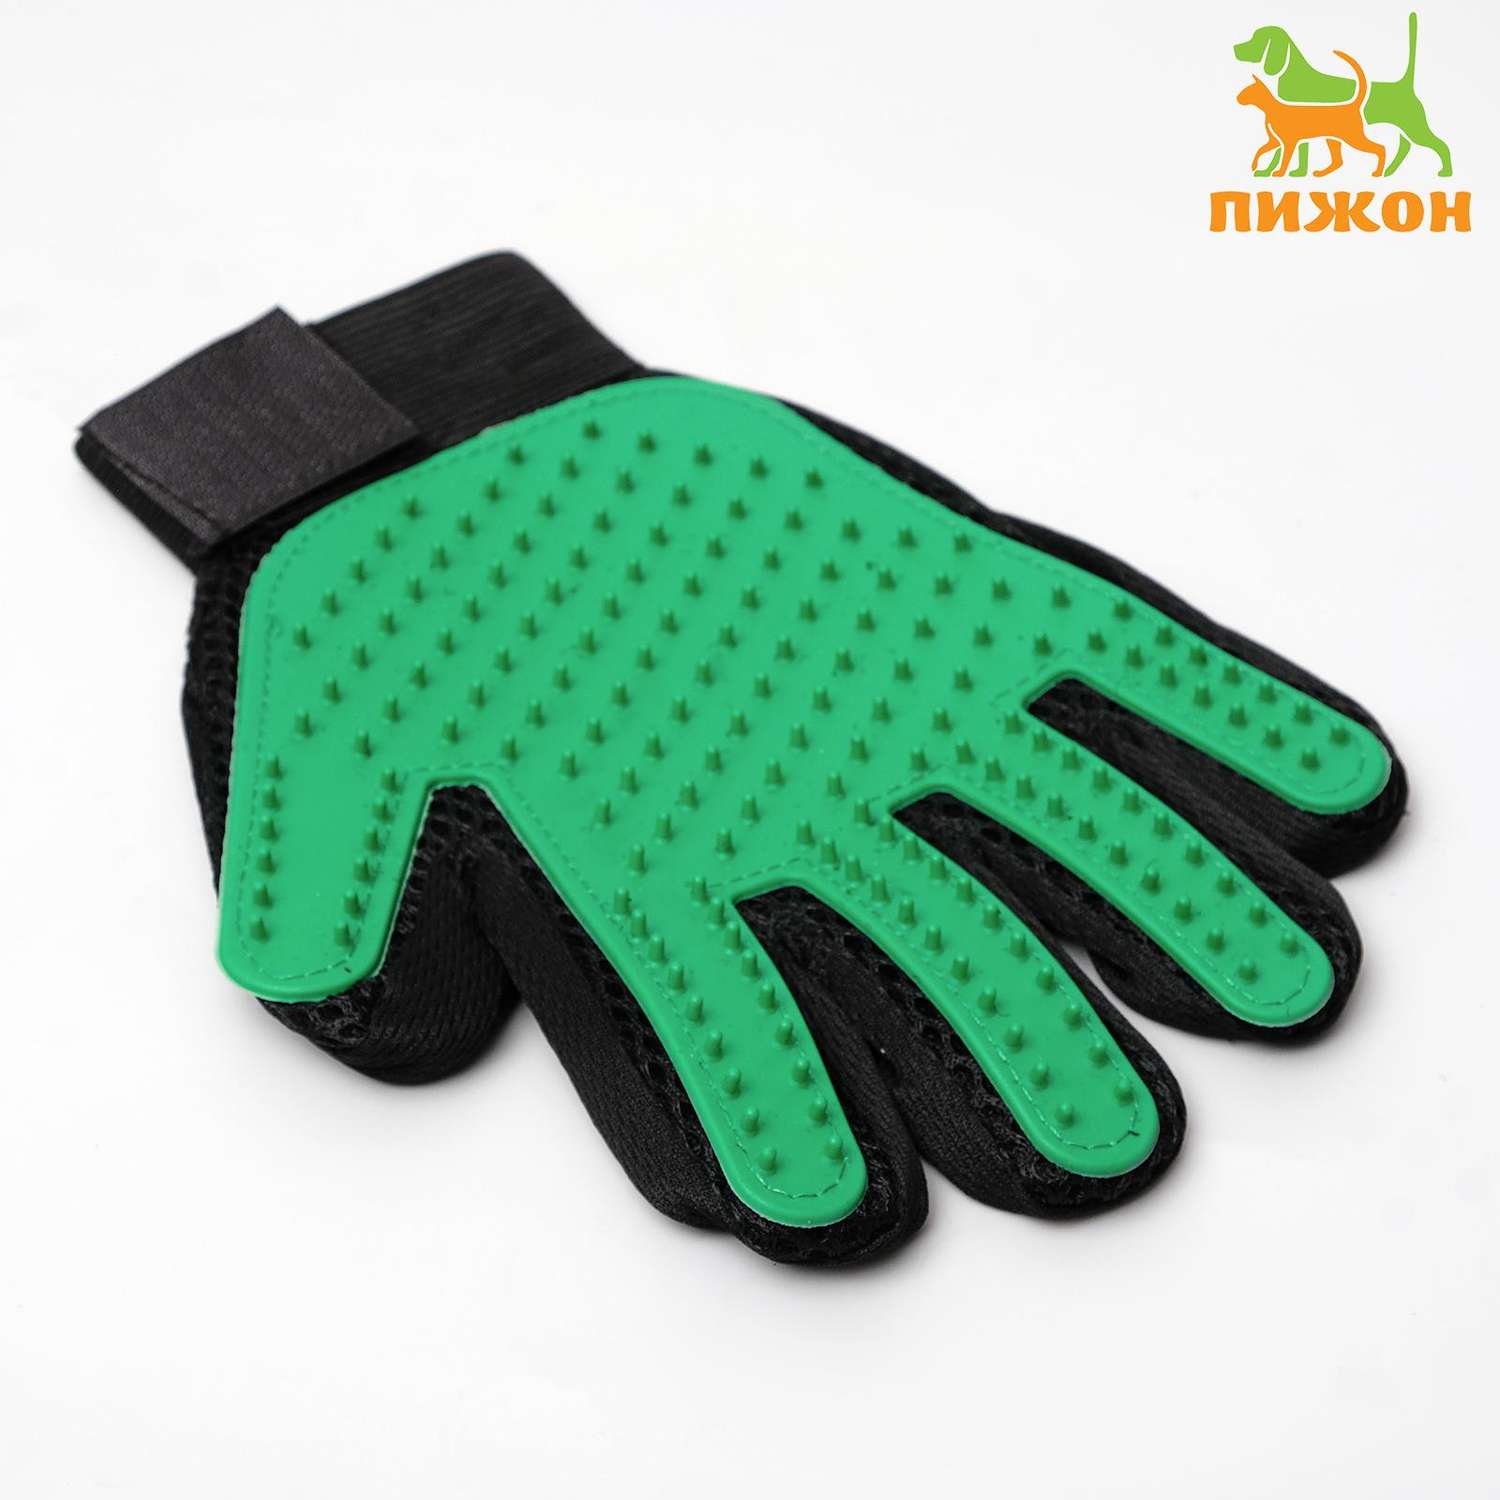 Перчатка для груминга Пижон для вычесывания шерсти из неопрена зеленая - фото 2